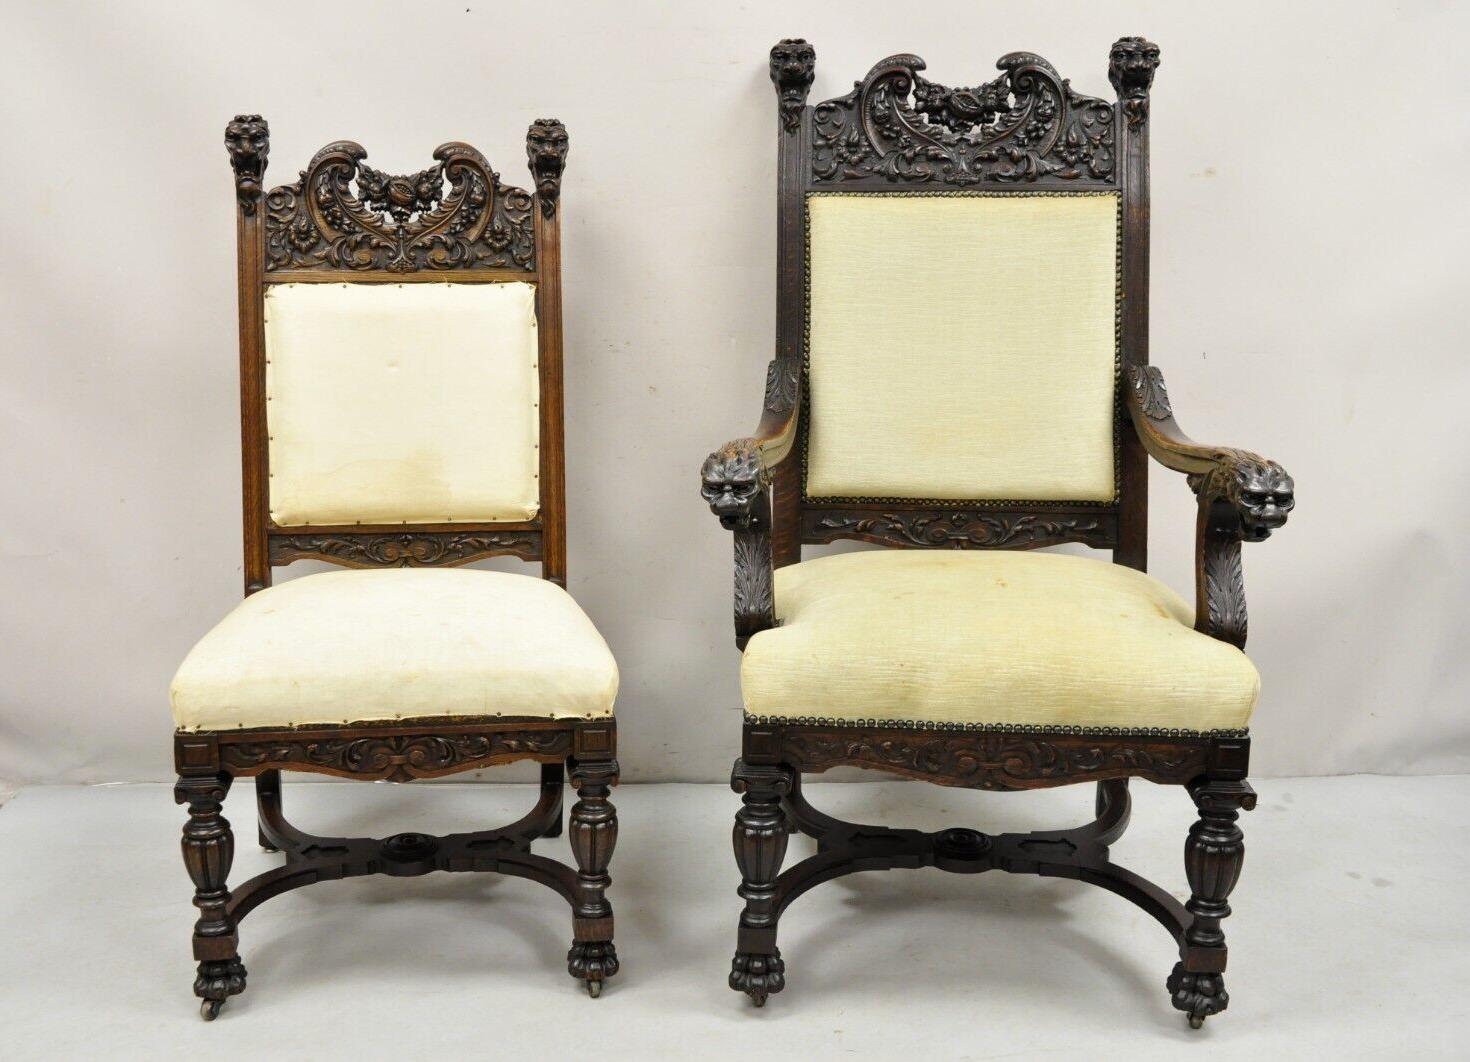 Anciennes chaises de salle à manger en chêne sculpté en lion de la Renaissance, attribuées à J.R. Horner - Ensemble de 6 pièces comprenant 2 fauteuils, 4 chaises d'appoint, de superbes cadres en bois de chêne massif sculptés de têtes de lion, de